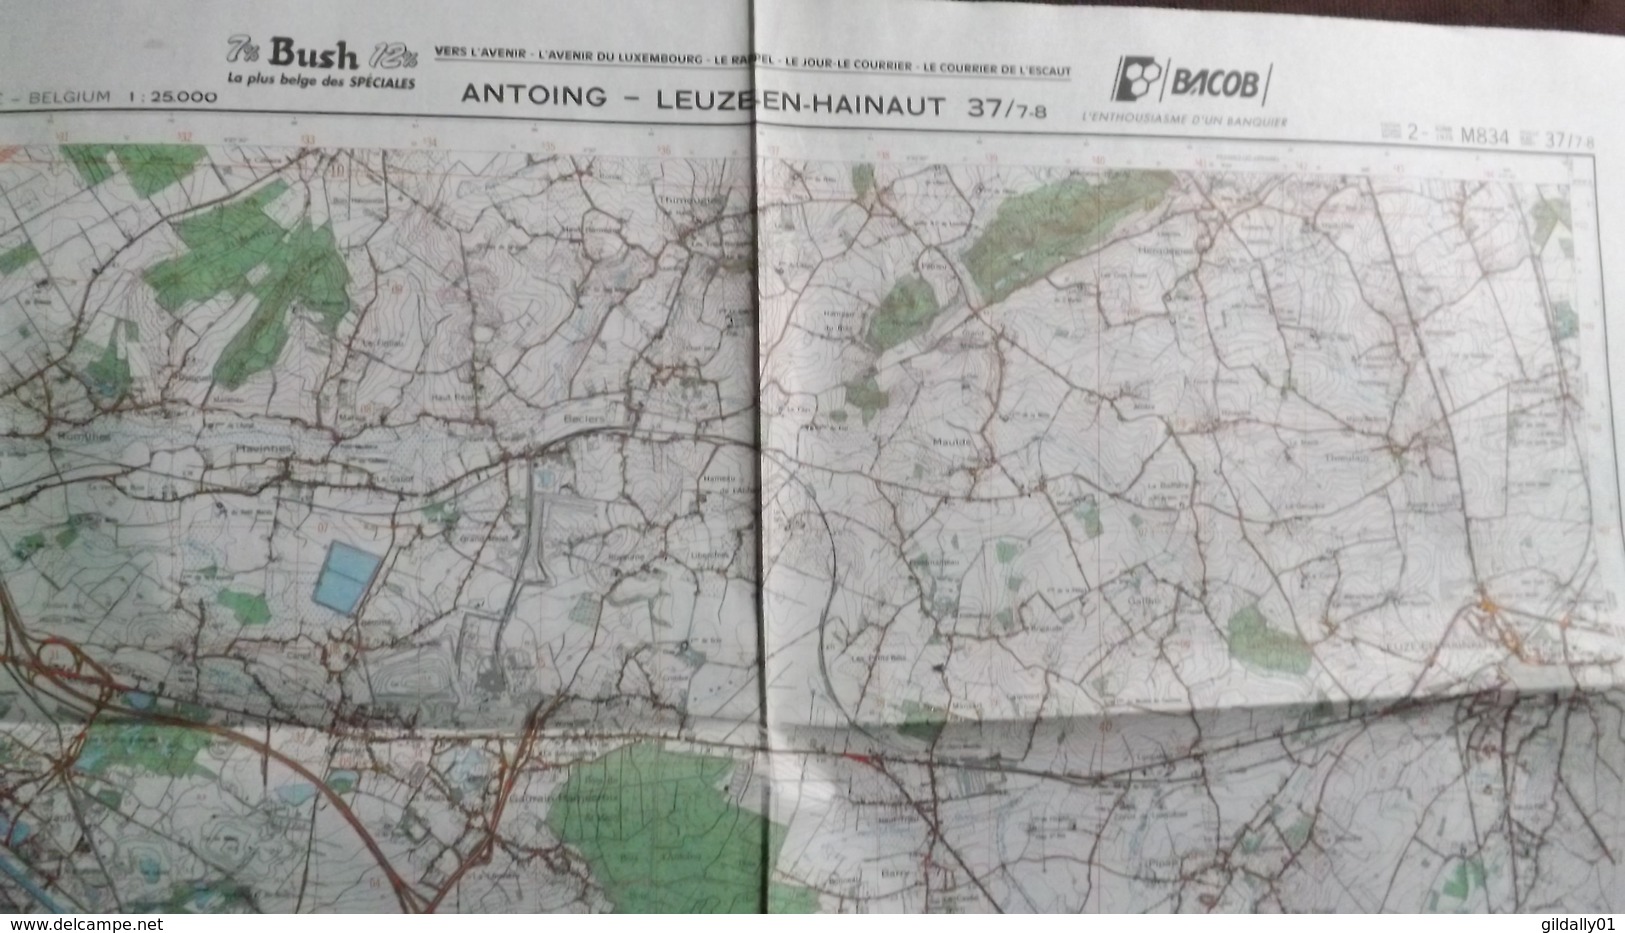 Plan-IGN BELGIQUE   *ANTOING - LEUZE-EN-HAINAUT*   37/7-8.  M834.  1978 - Cartes Géographiques